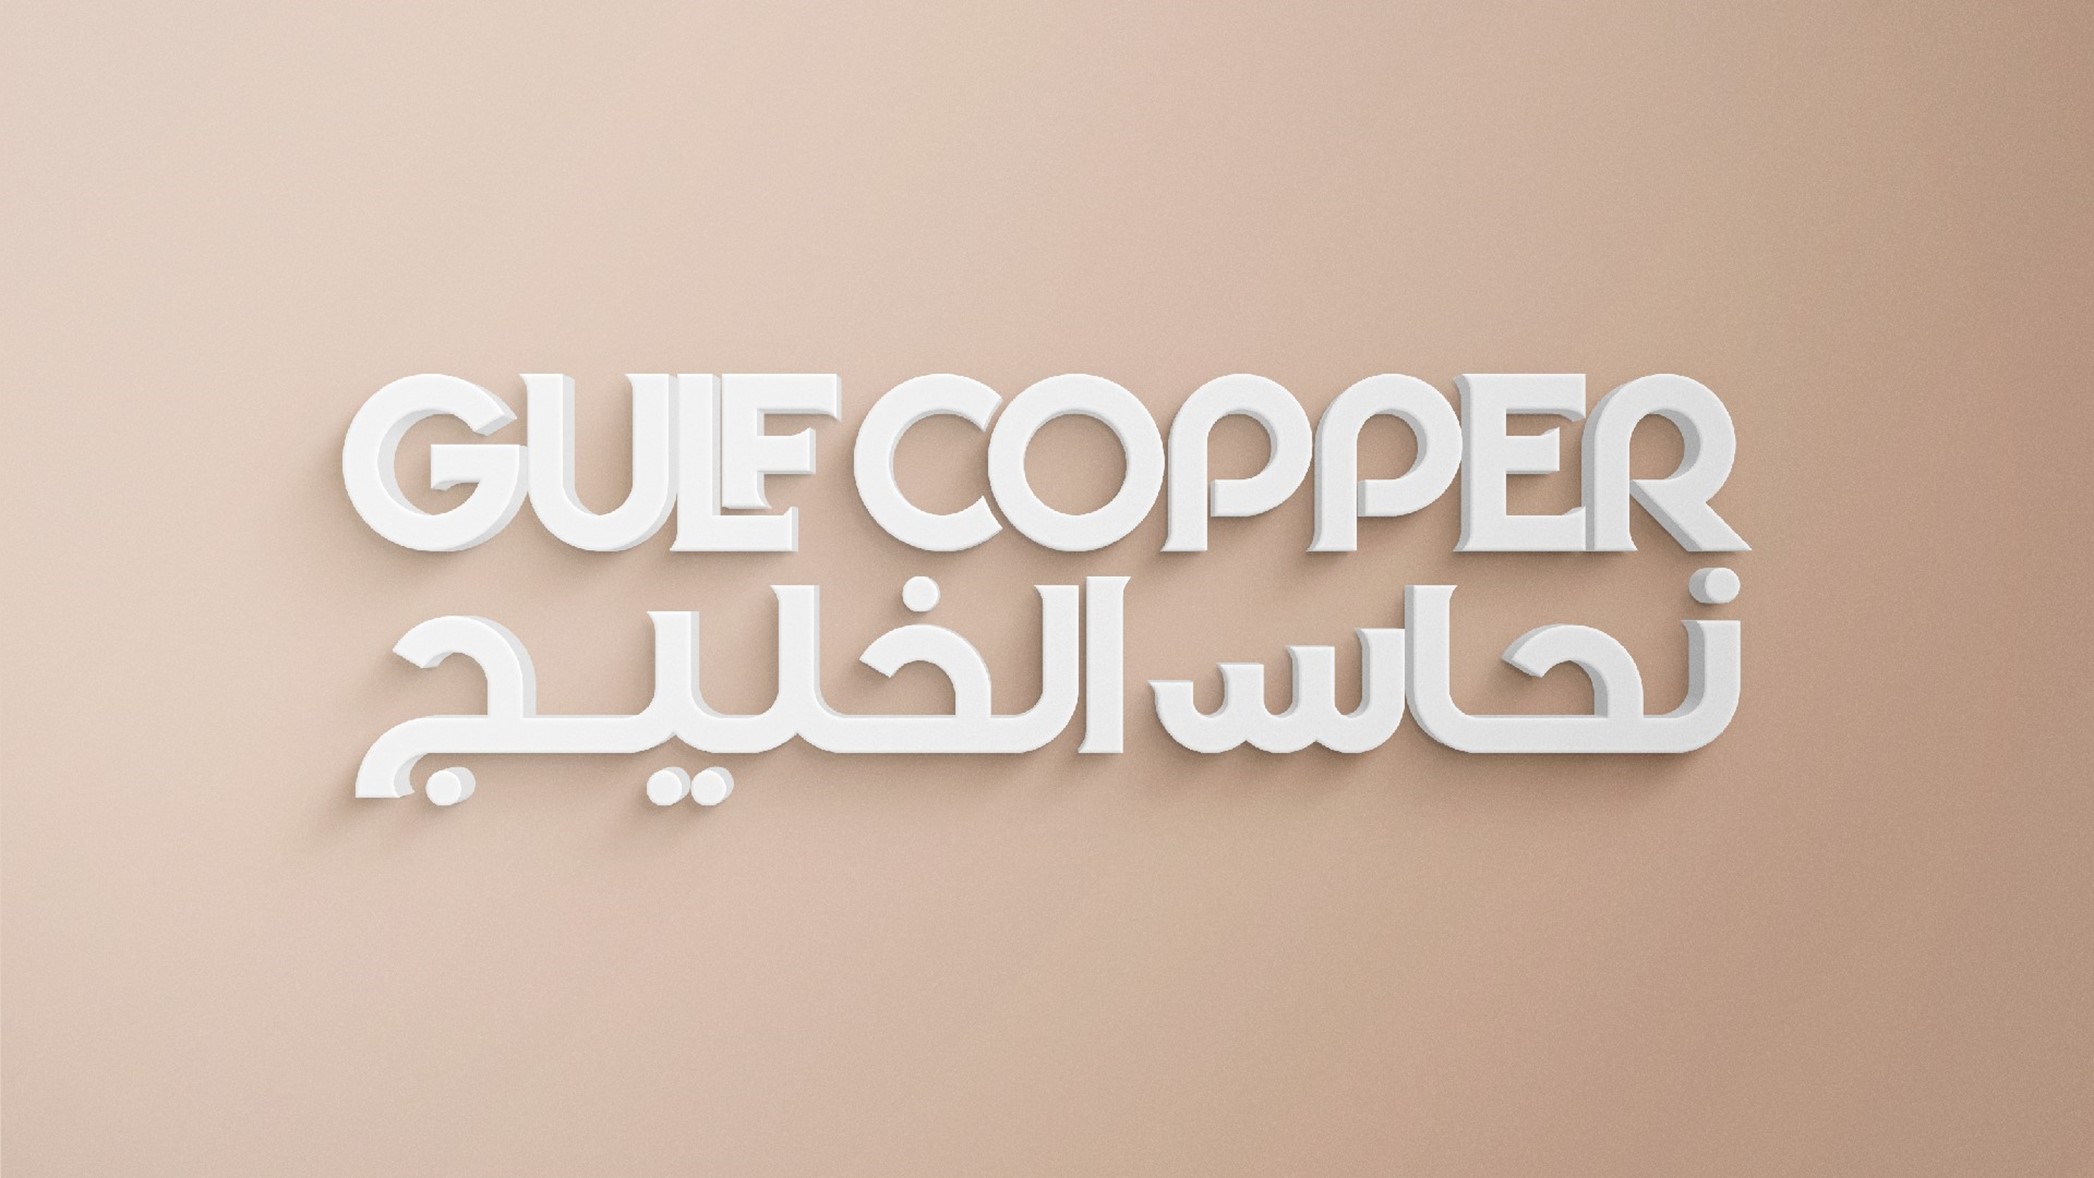 Gulf Copper